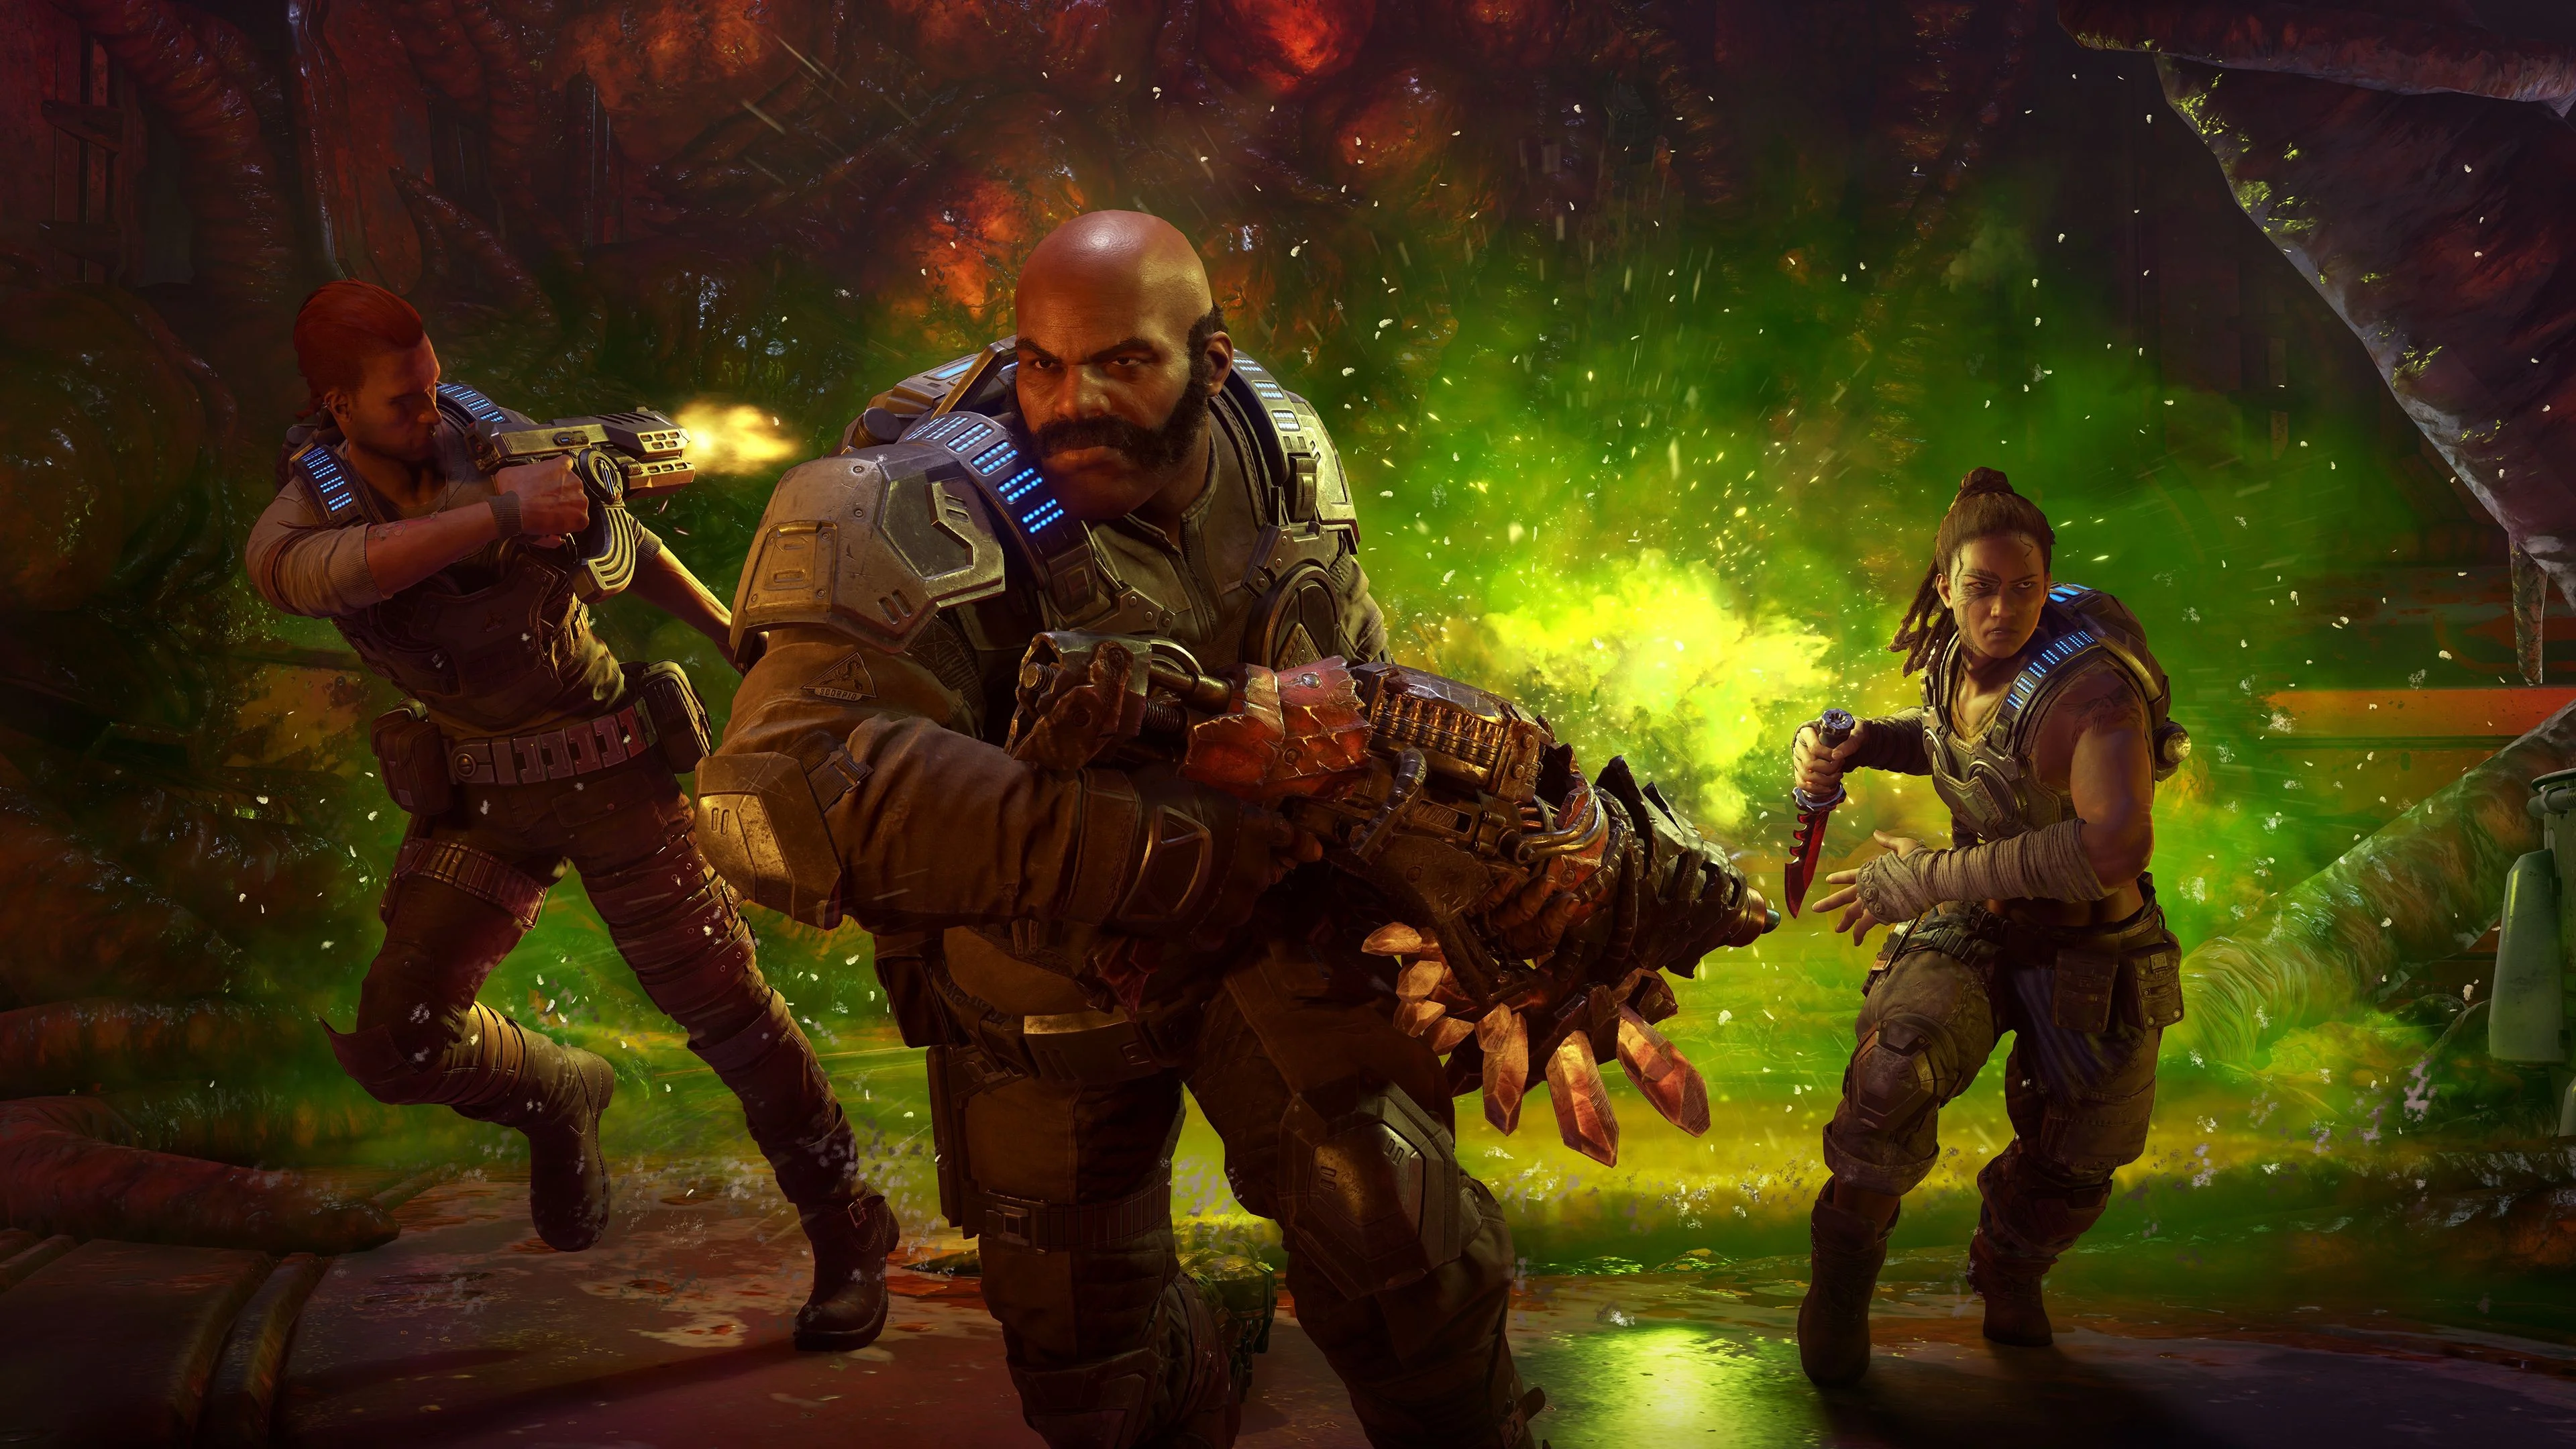 E3 2019: Впечатления от Gears 5. Пара слов о мультиплеерном режиме Escape - изображение обложка